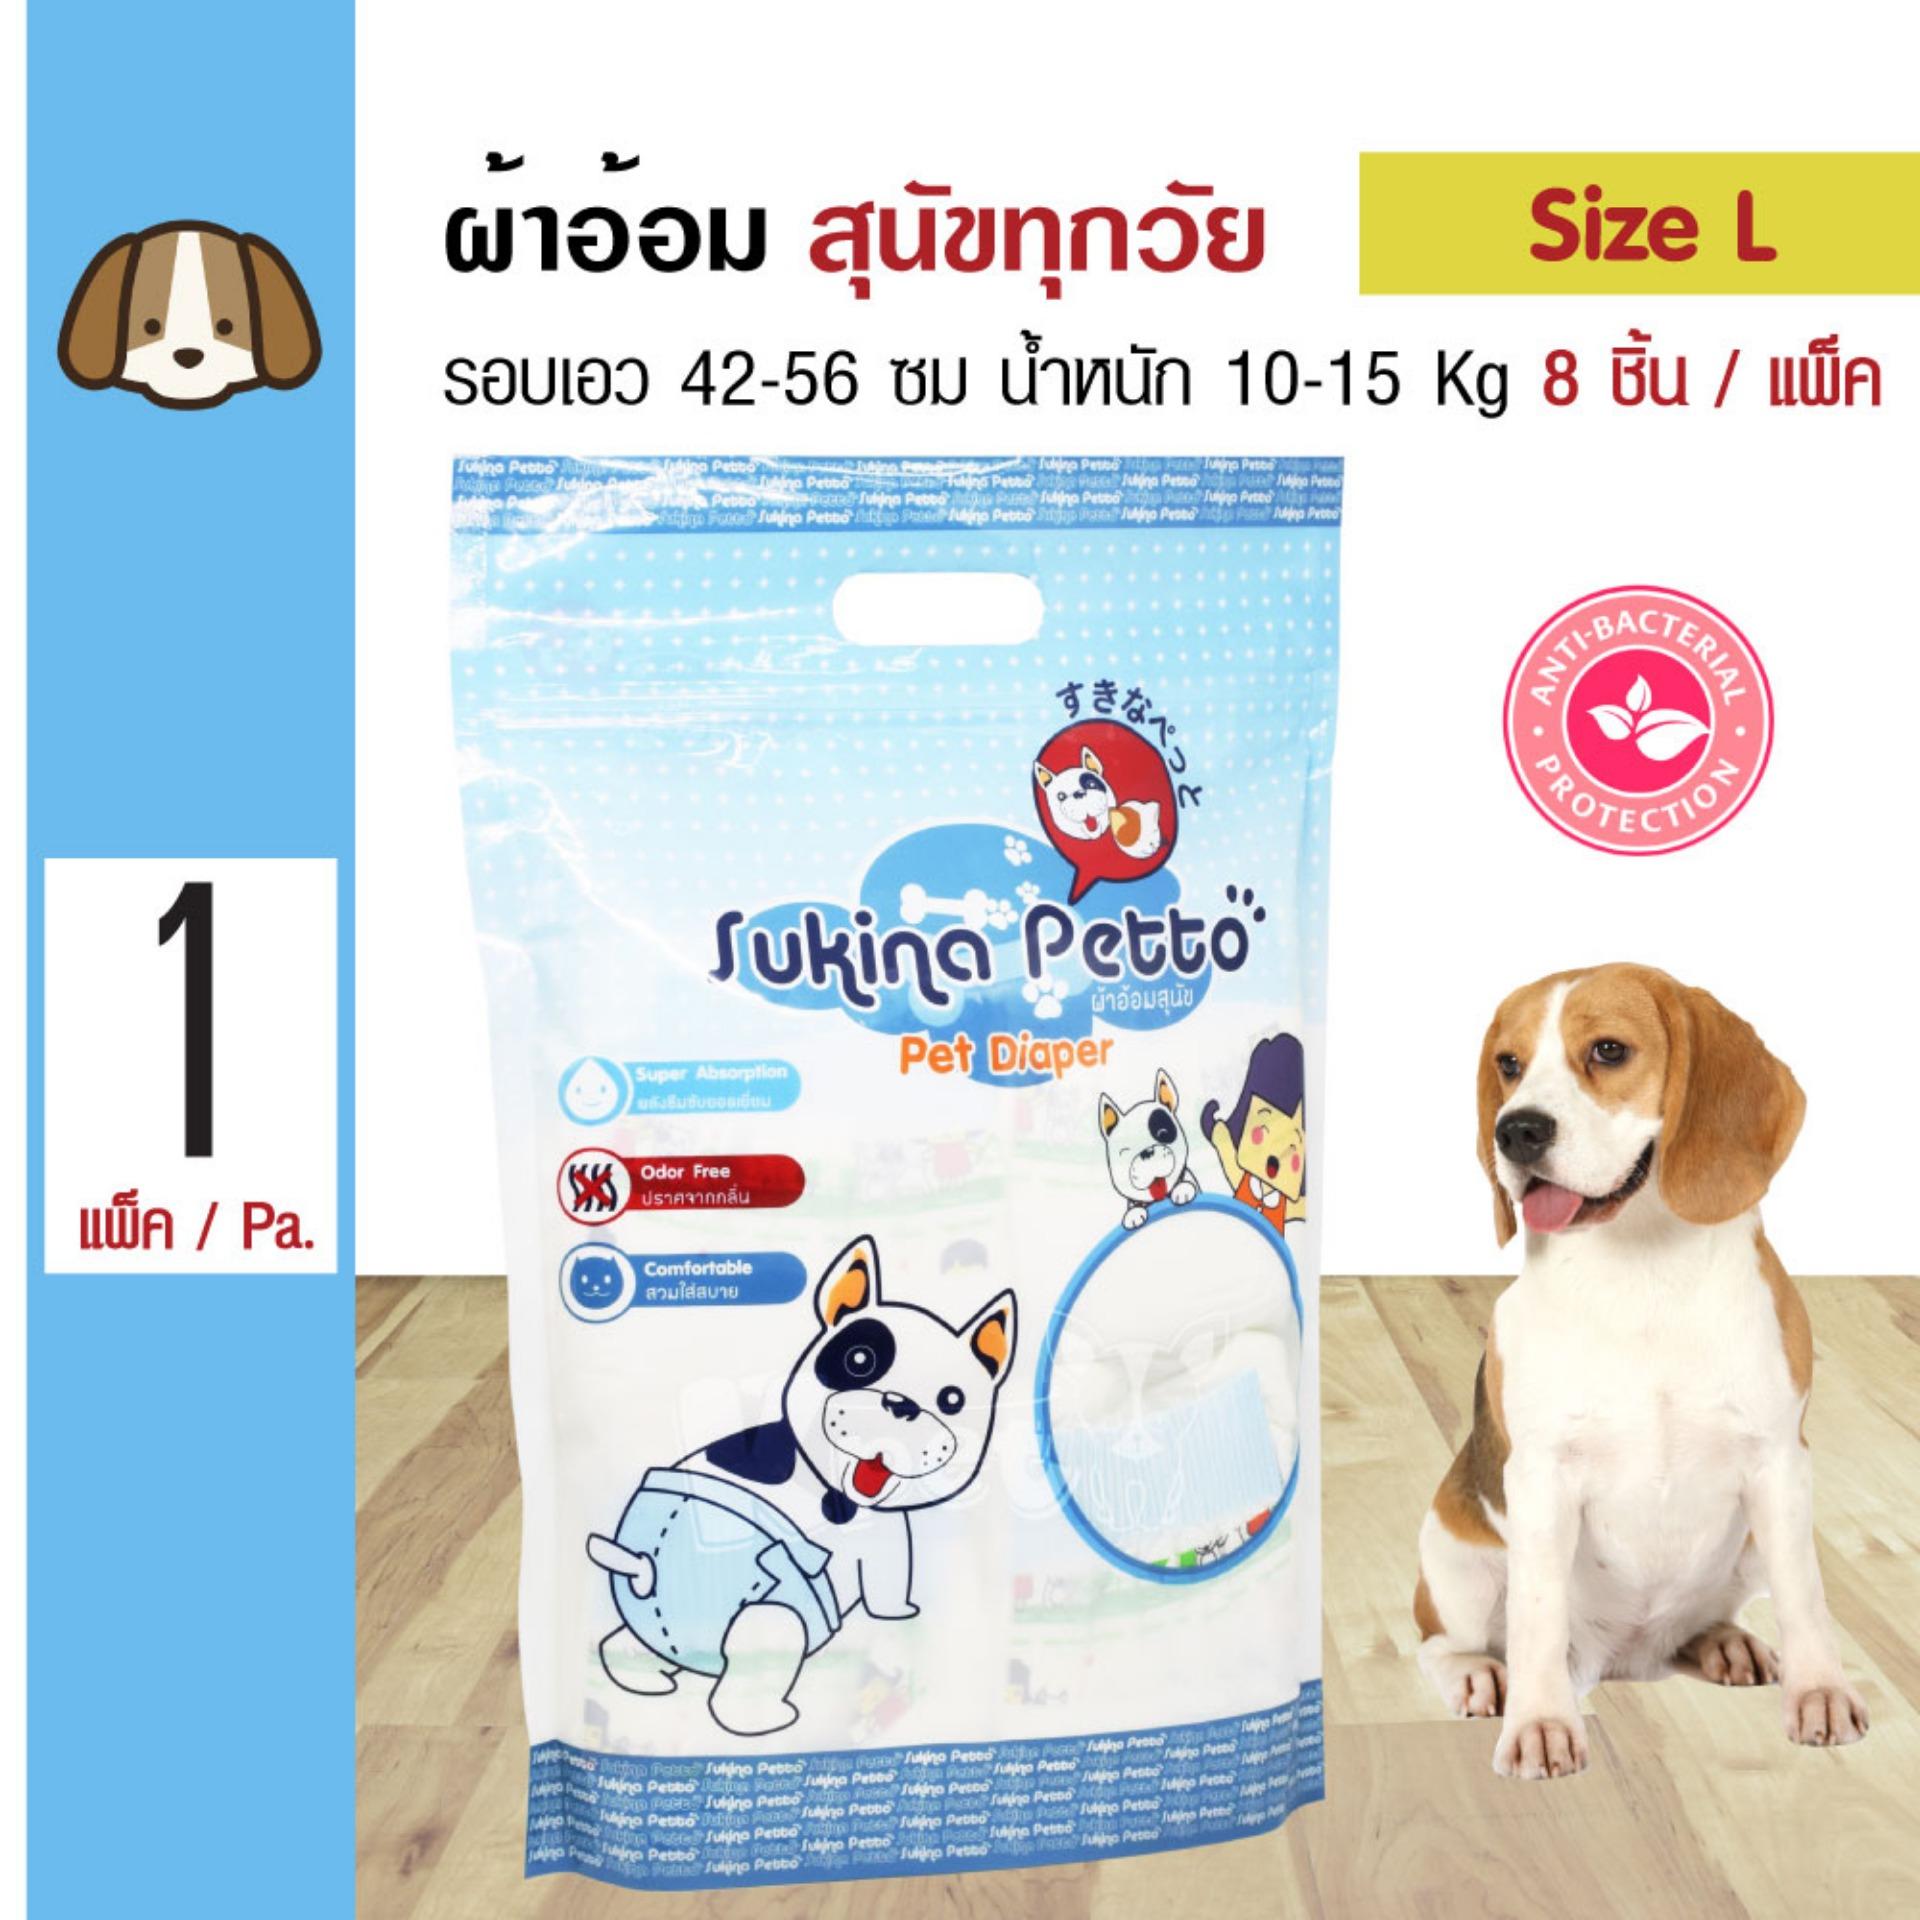 Sukina Petto Diapers ผ้าอ้อมสุนัข ฝึกขับถ่าย Size L สำหรับสุนัขน้ำหนัก 10-15 kg. รอบเอว 42-56 ซม. ความสูง 25 ซม. (8 ชิ้น/แพ็ค)